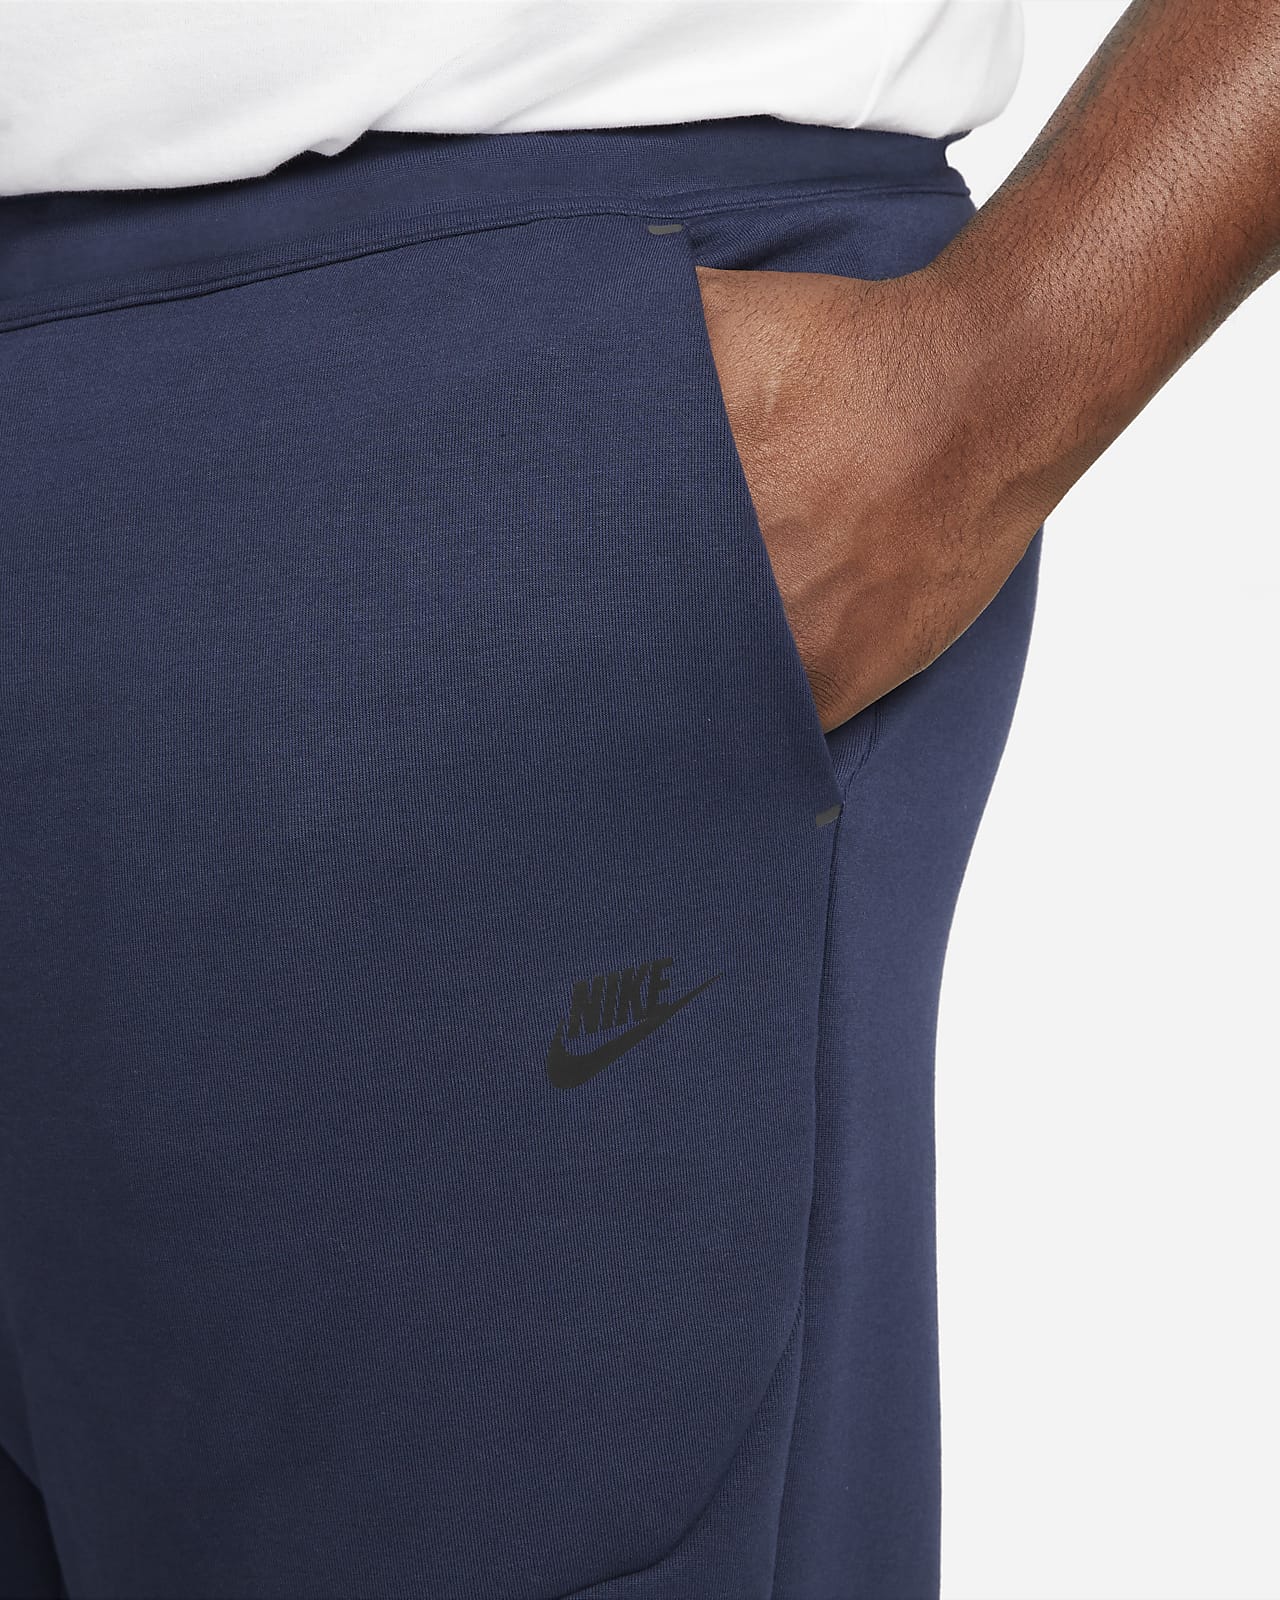 Nike Size S L XL XL-Tall Men's Sportswear Tech Fleece Joggers